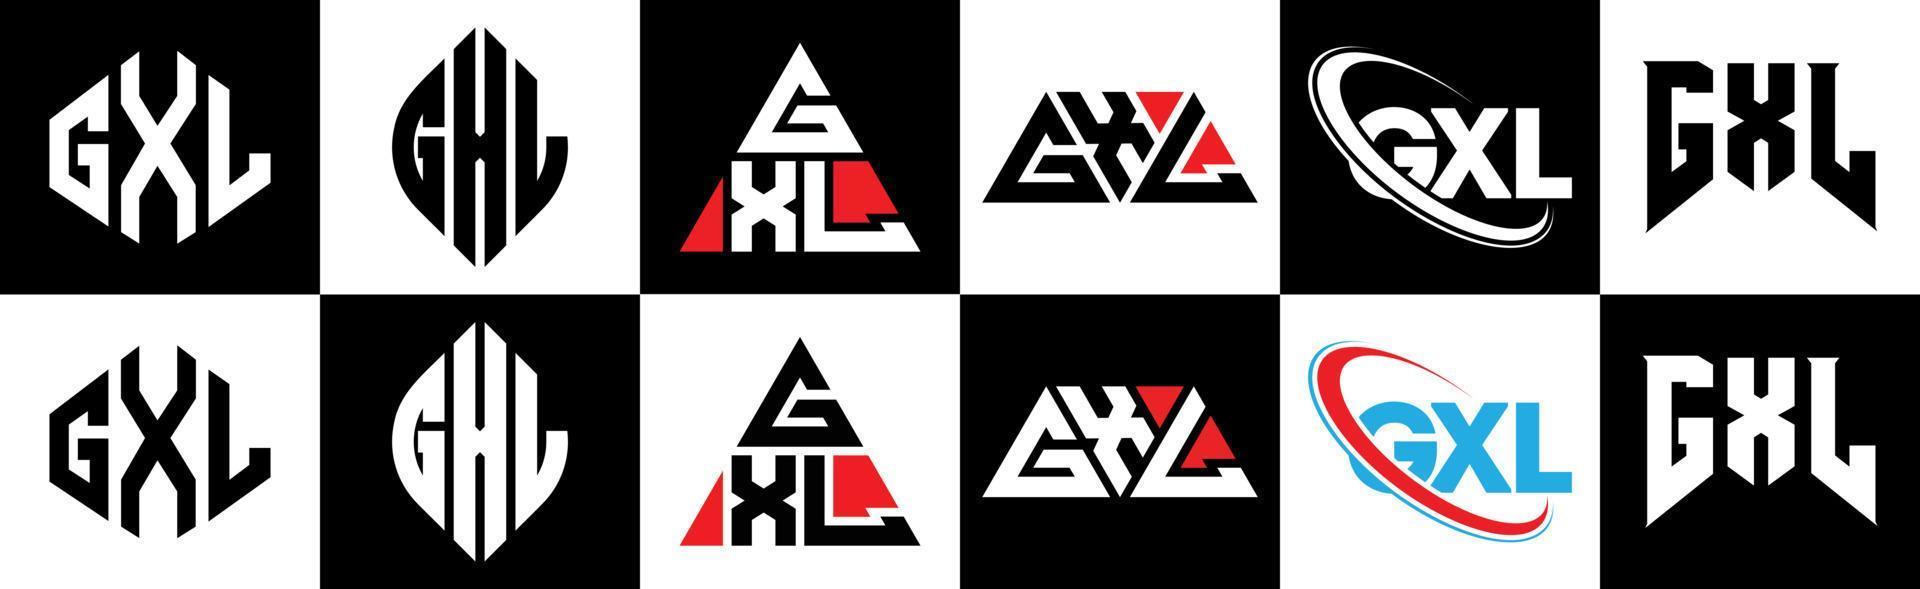 gxl-Buchstaben-Logo-Design in sechs Stilen. gxl polygon, kreis, dreieck, sechseck, flacher und einfacher stil mit schwarz-weißem buchstabenlogo in einer zeichenfläche. gxl minimalistisches und klassisches logo vektor